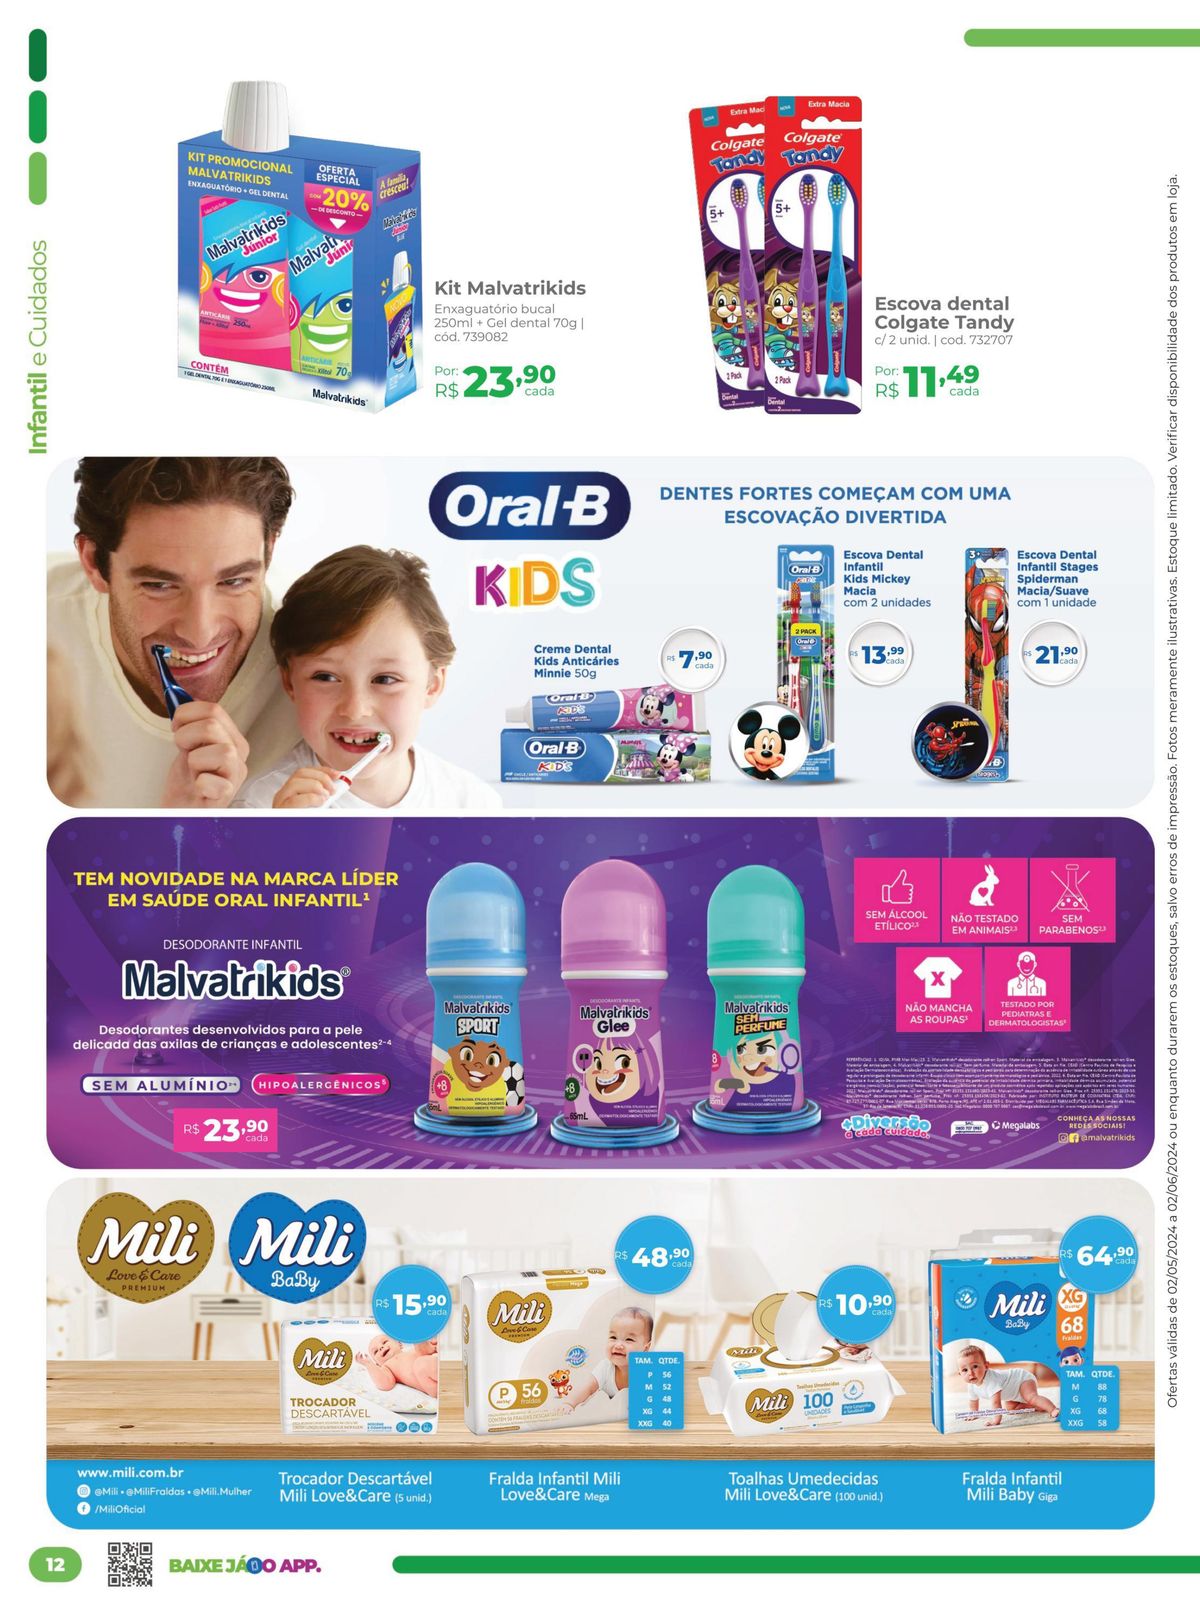 Kit Malvatrikids, Desodorante Infantil e Escovas Dentais em Promoção